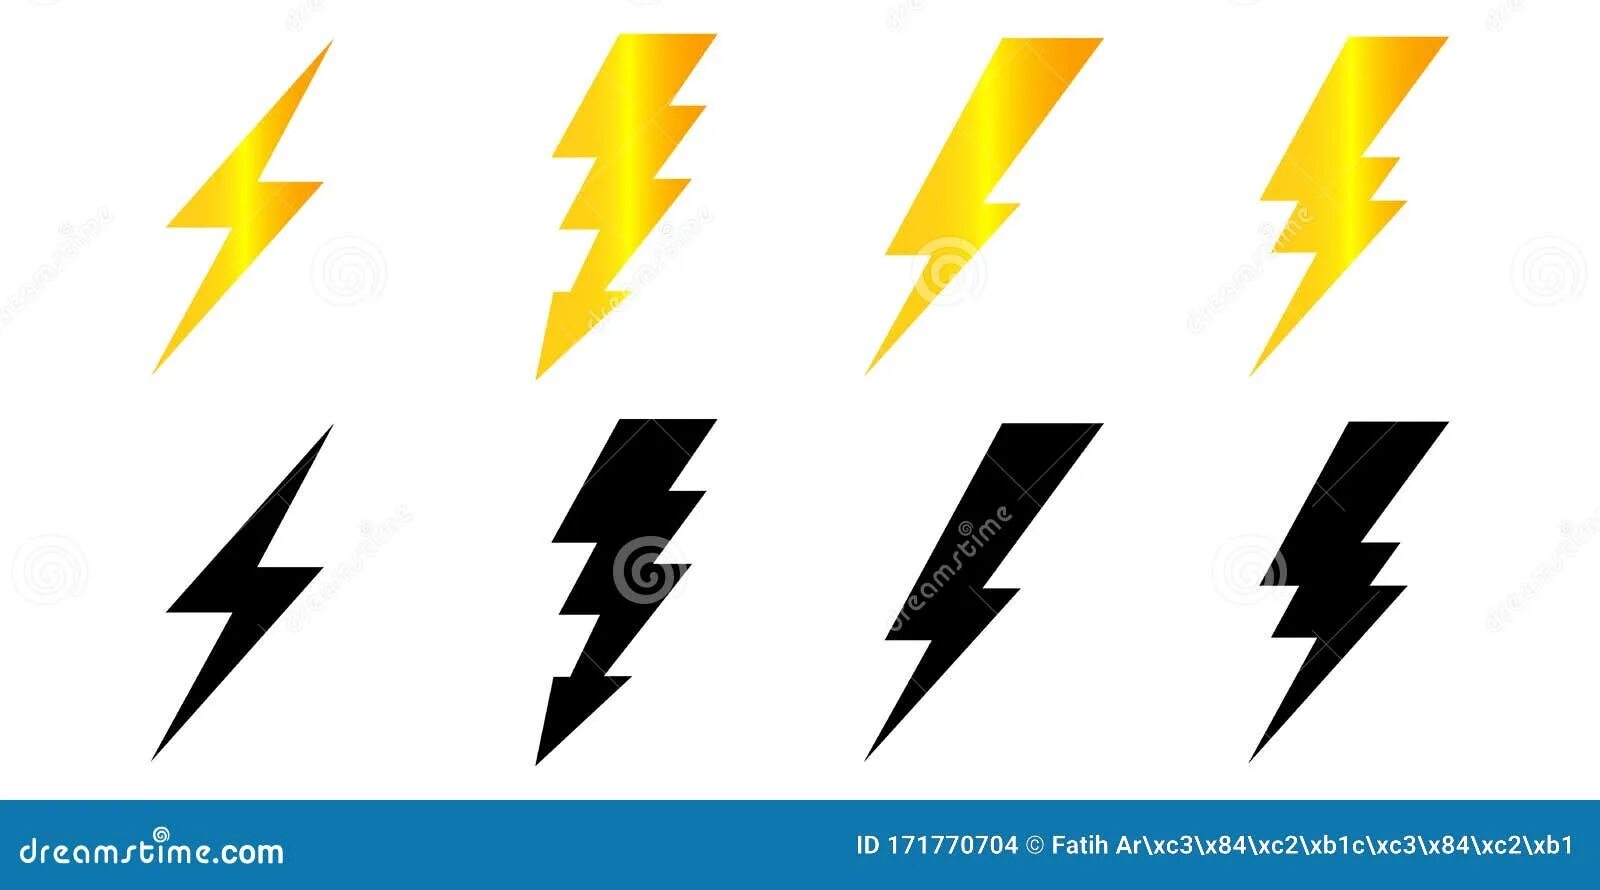 Молния пиктограмма. Молния на белом фоне иконка. Значок электричества молния на белом фоне. Знак электричество треугольник с молнией.